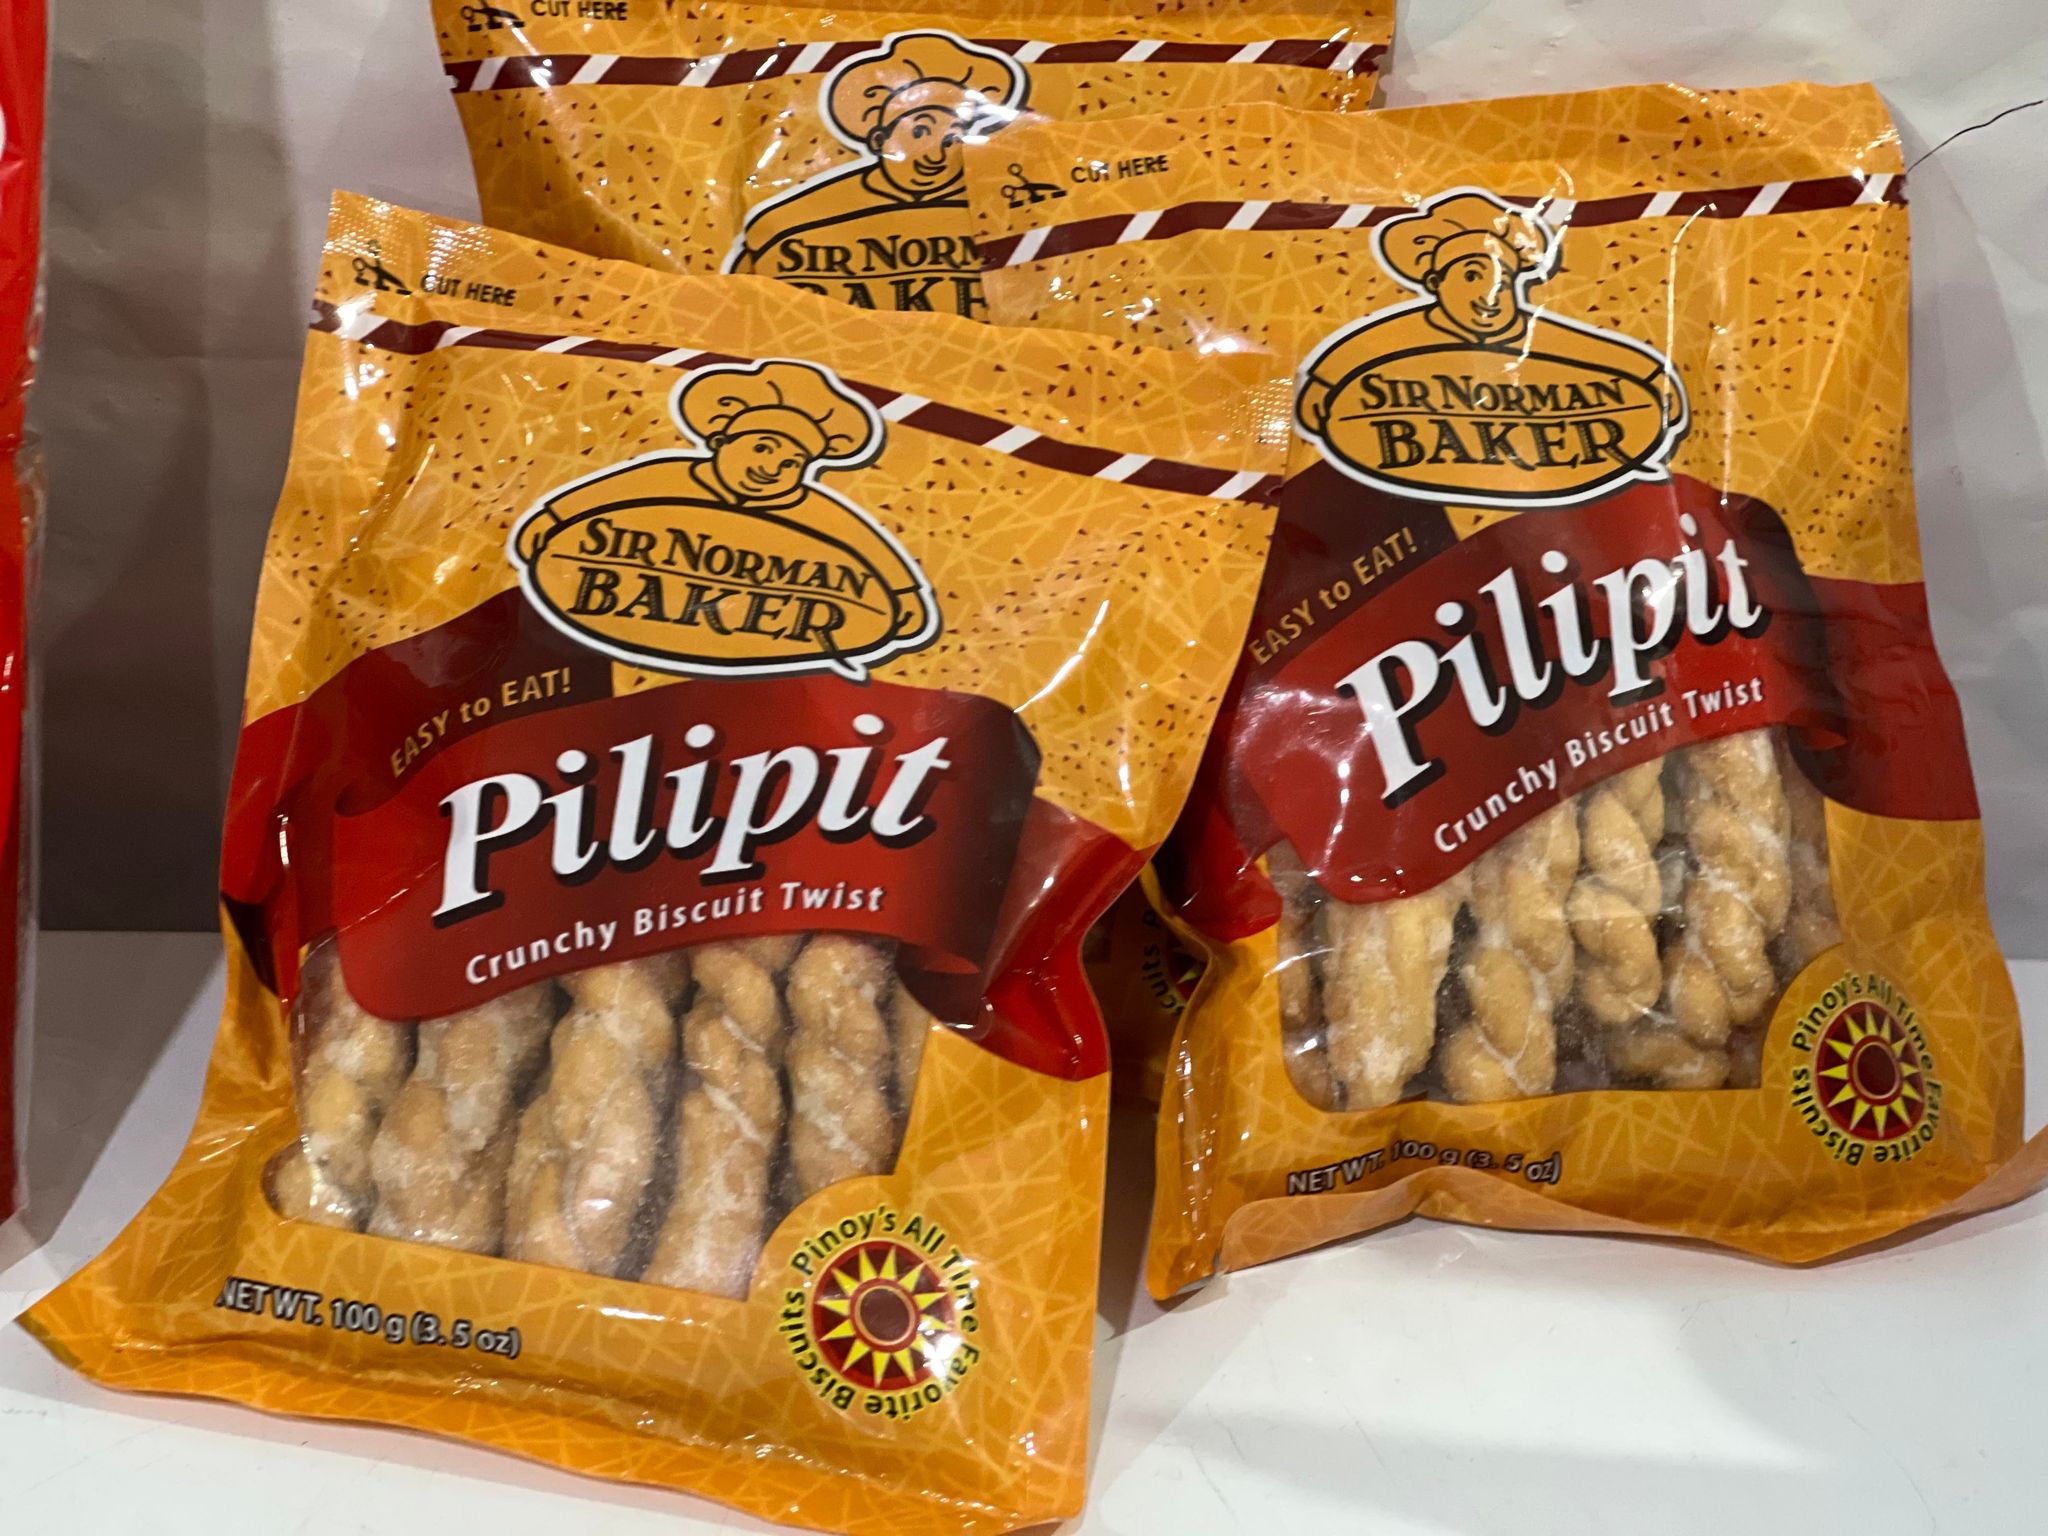 Pilipit Crunch